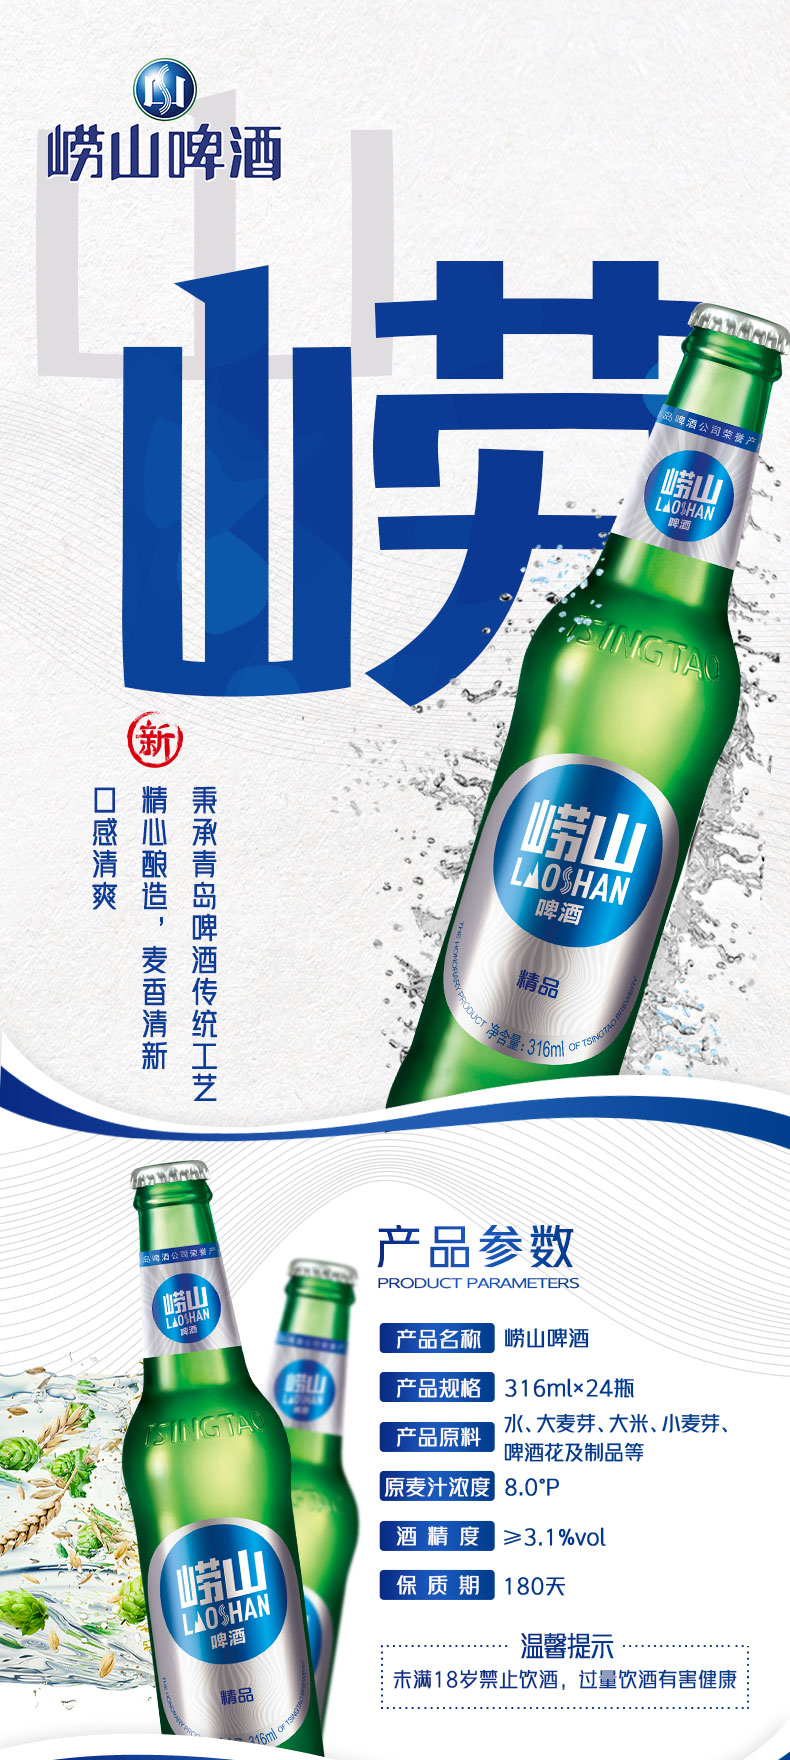 青岛 崂山啤酒 经典小瓶装316ml*24瓶